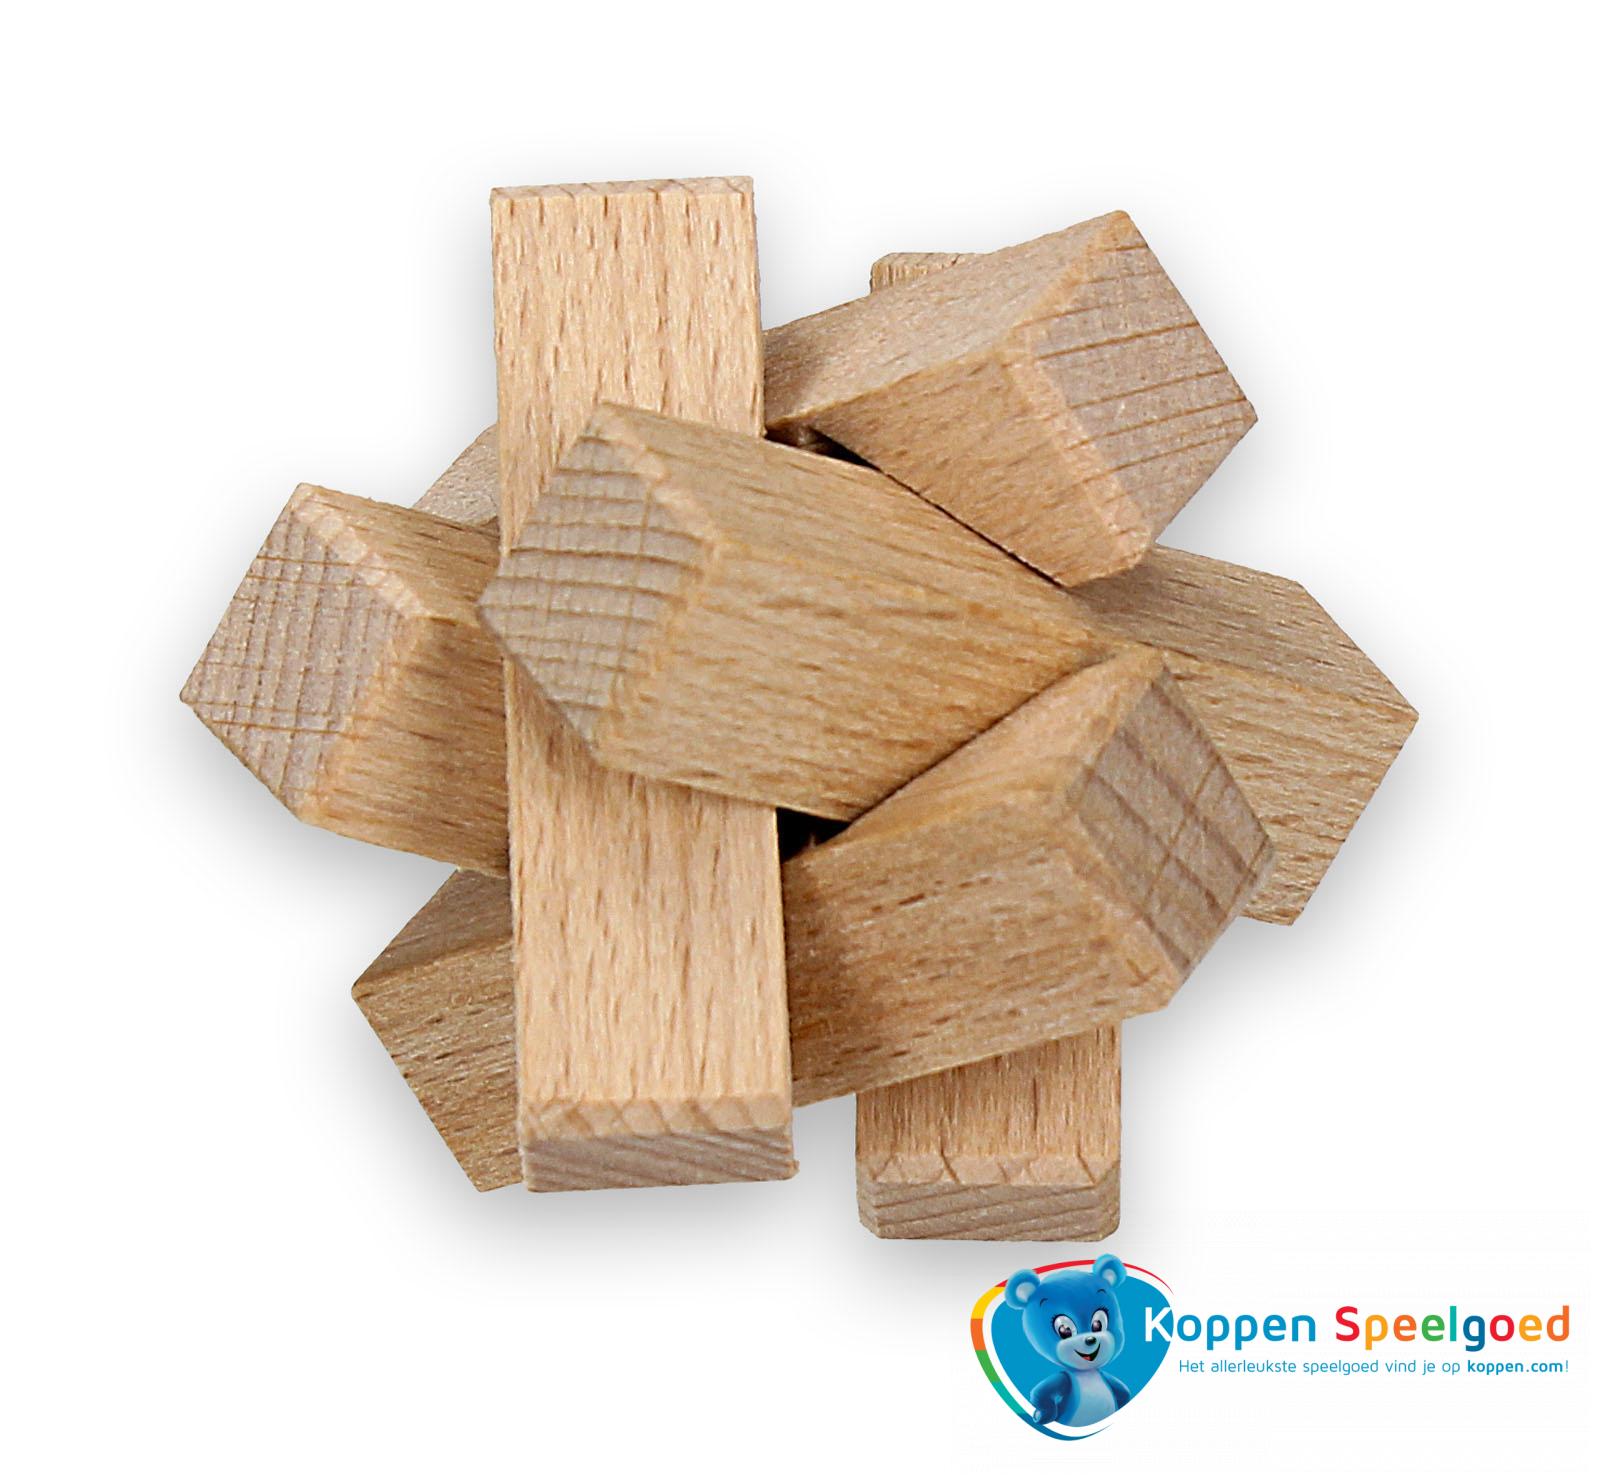 kubus 3D in zakje, hout | Koppen.com